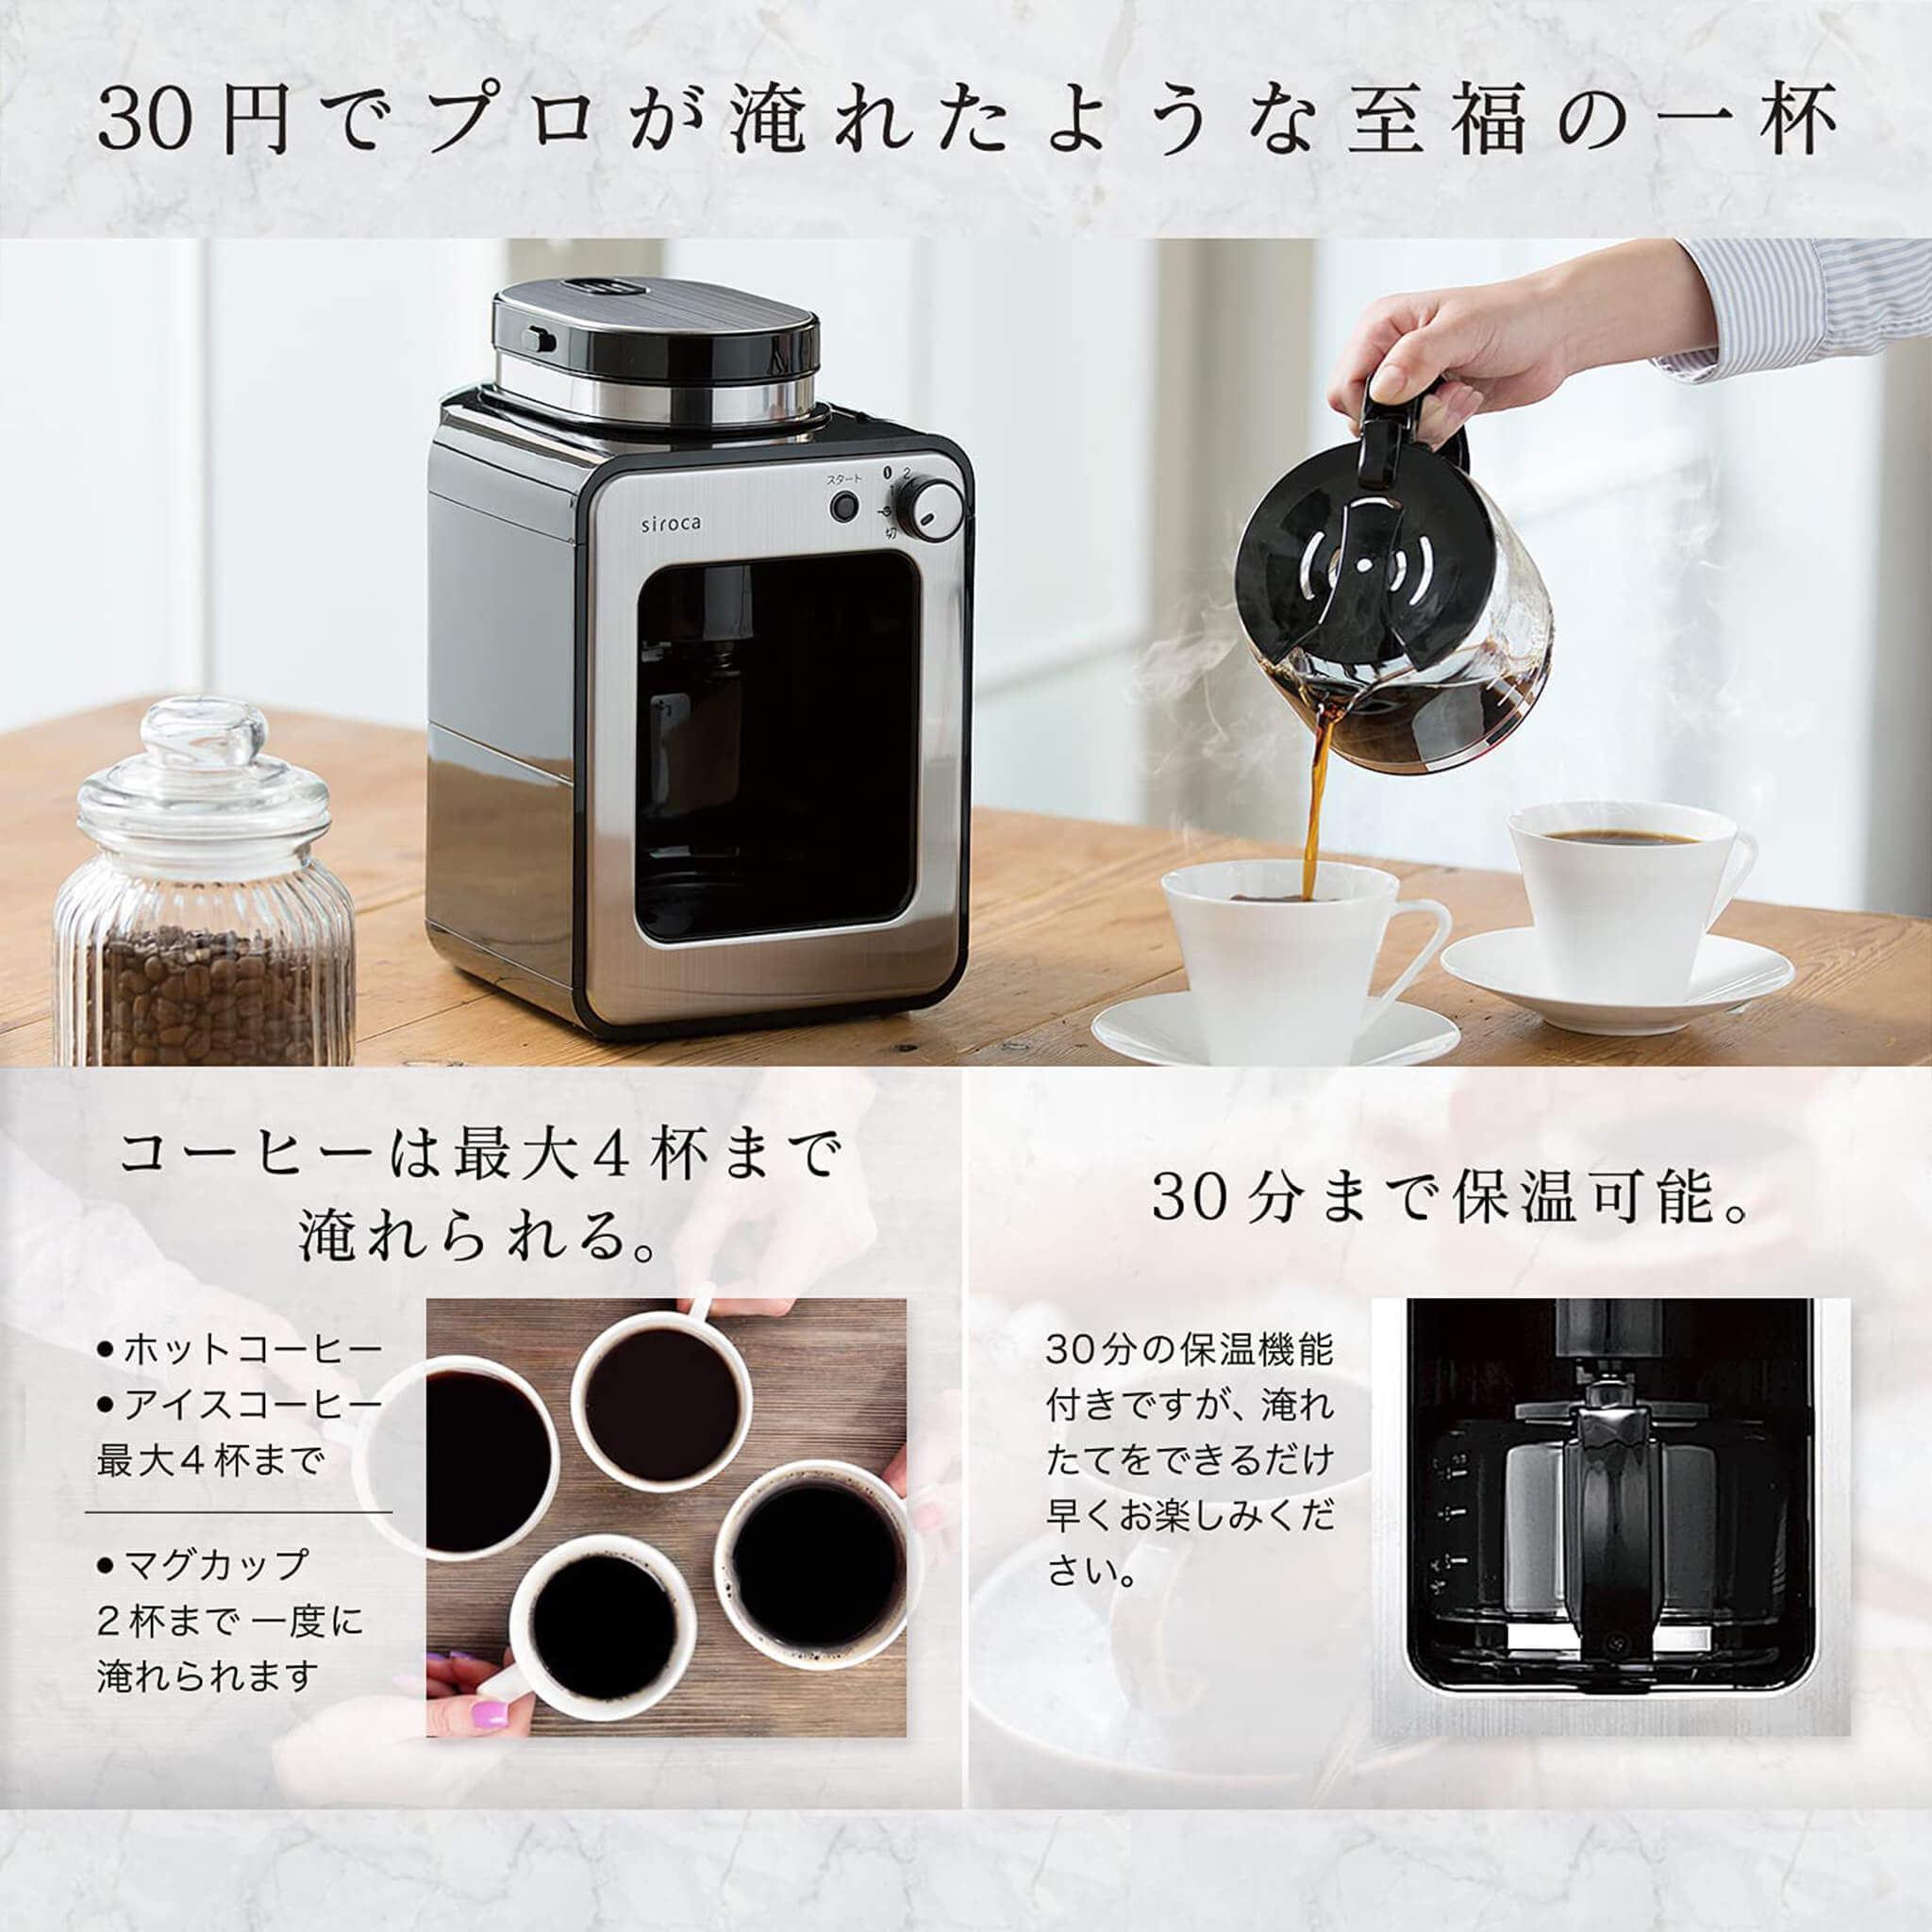 [新品未使用]siroca 全自動コーヒーメーカー SC-A211調理家電